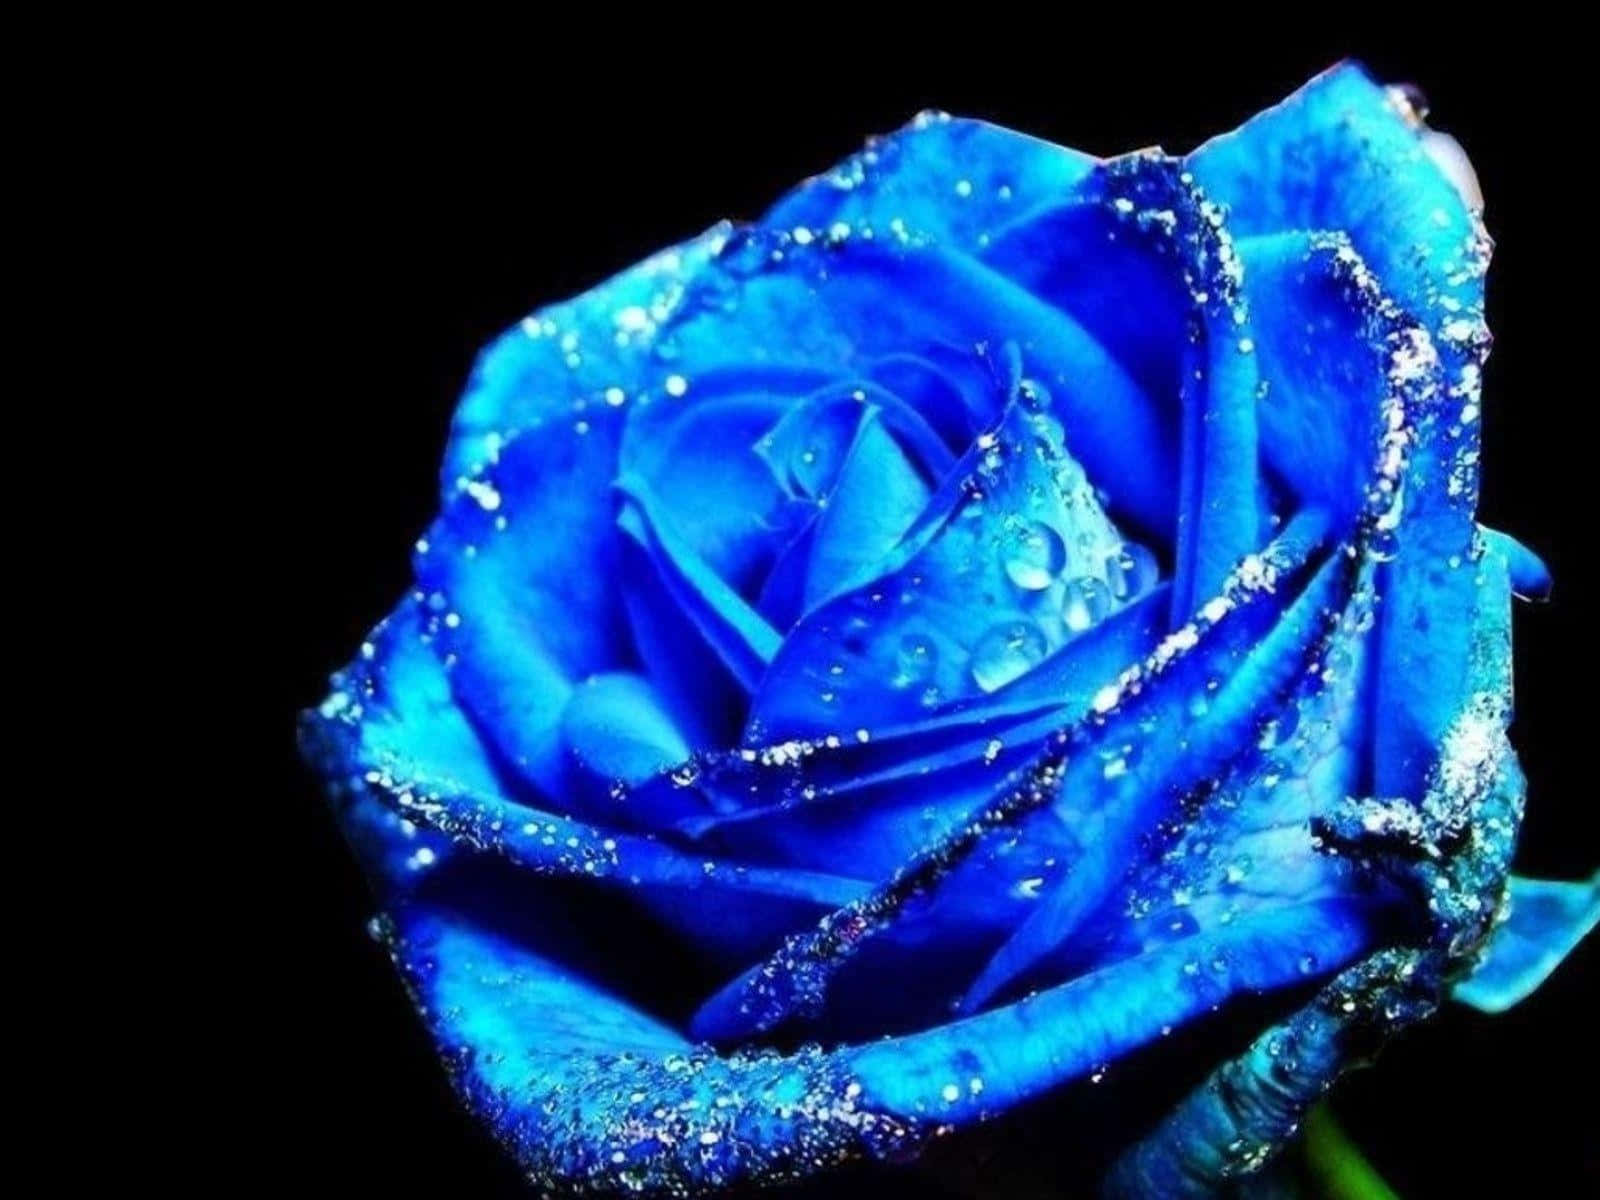 En sjælden og smuk blå rose i fuldt flor. Wallpaper